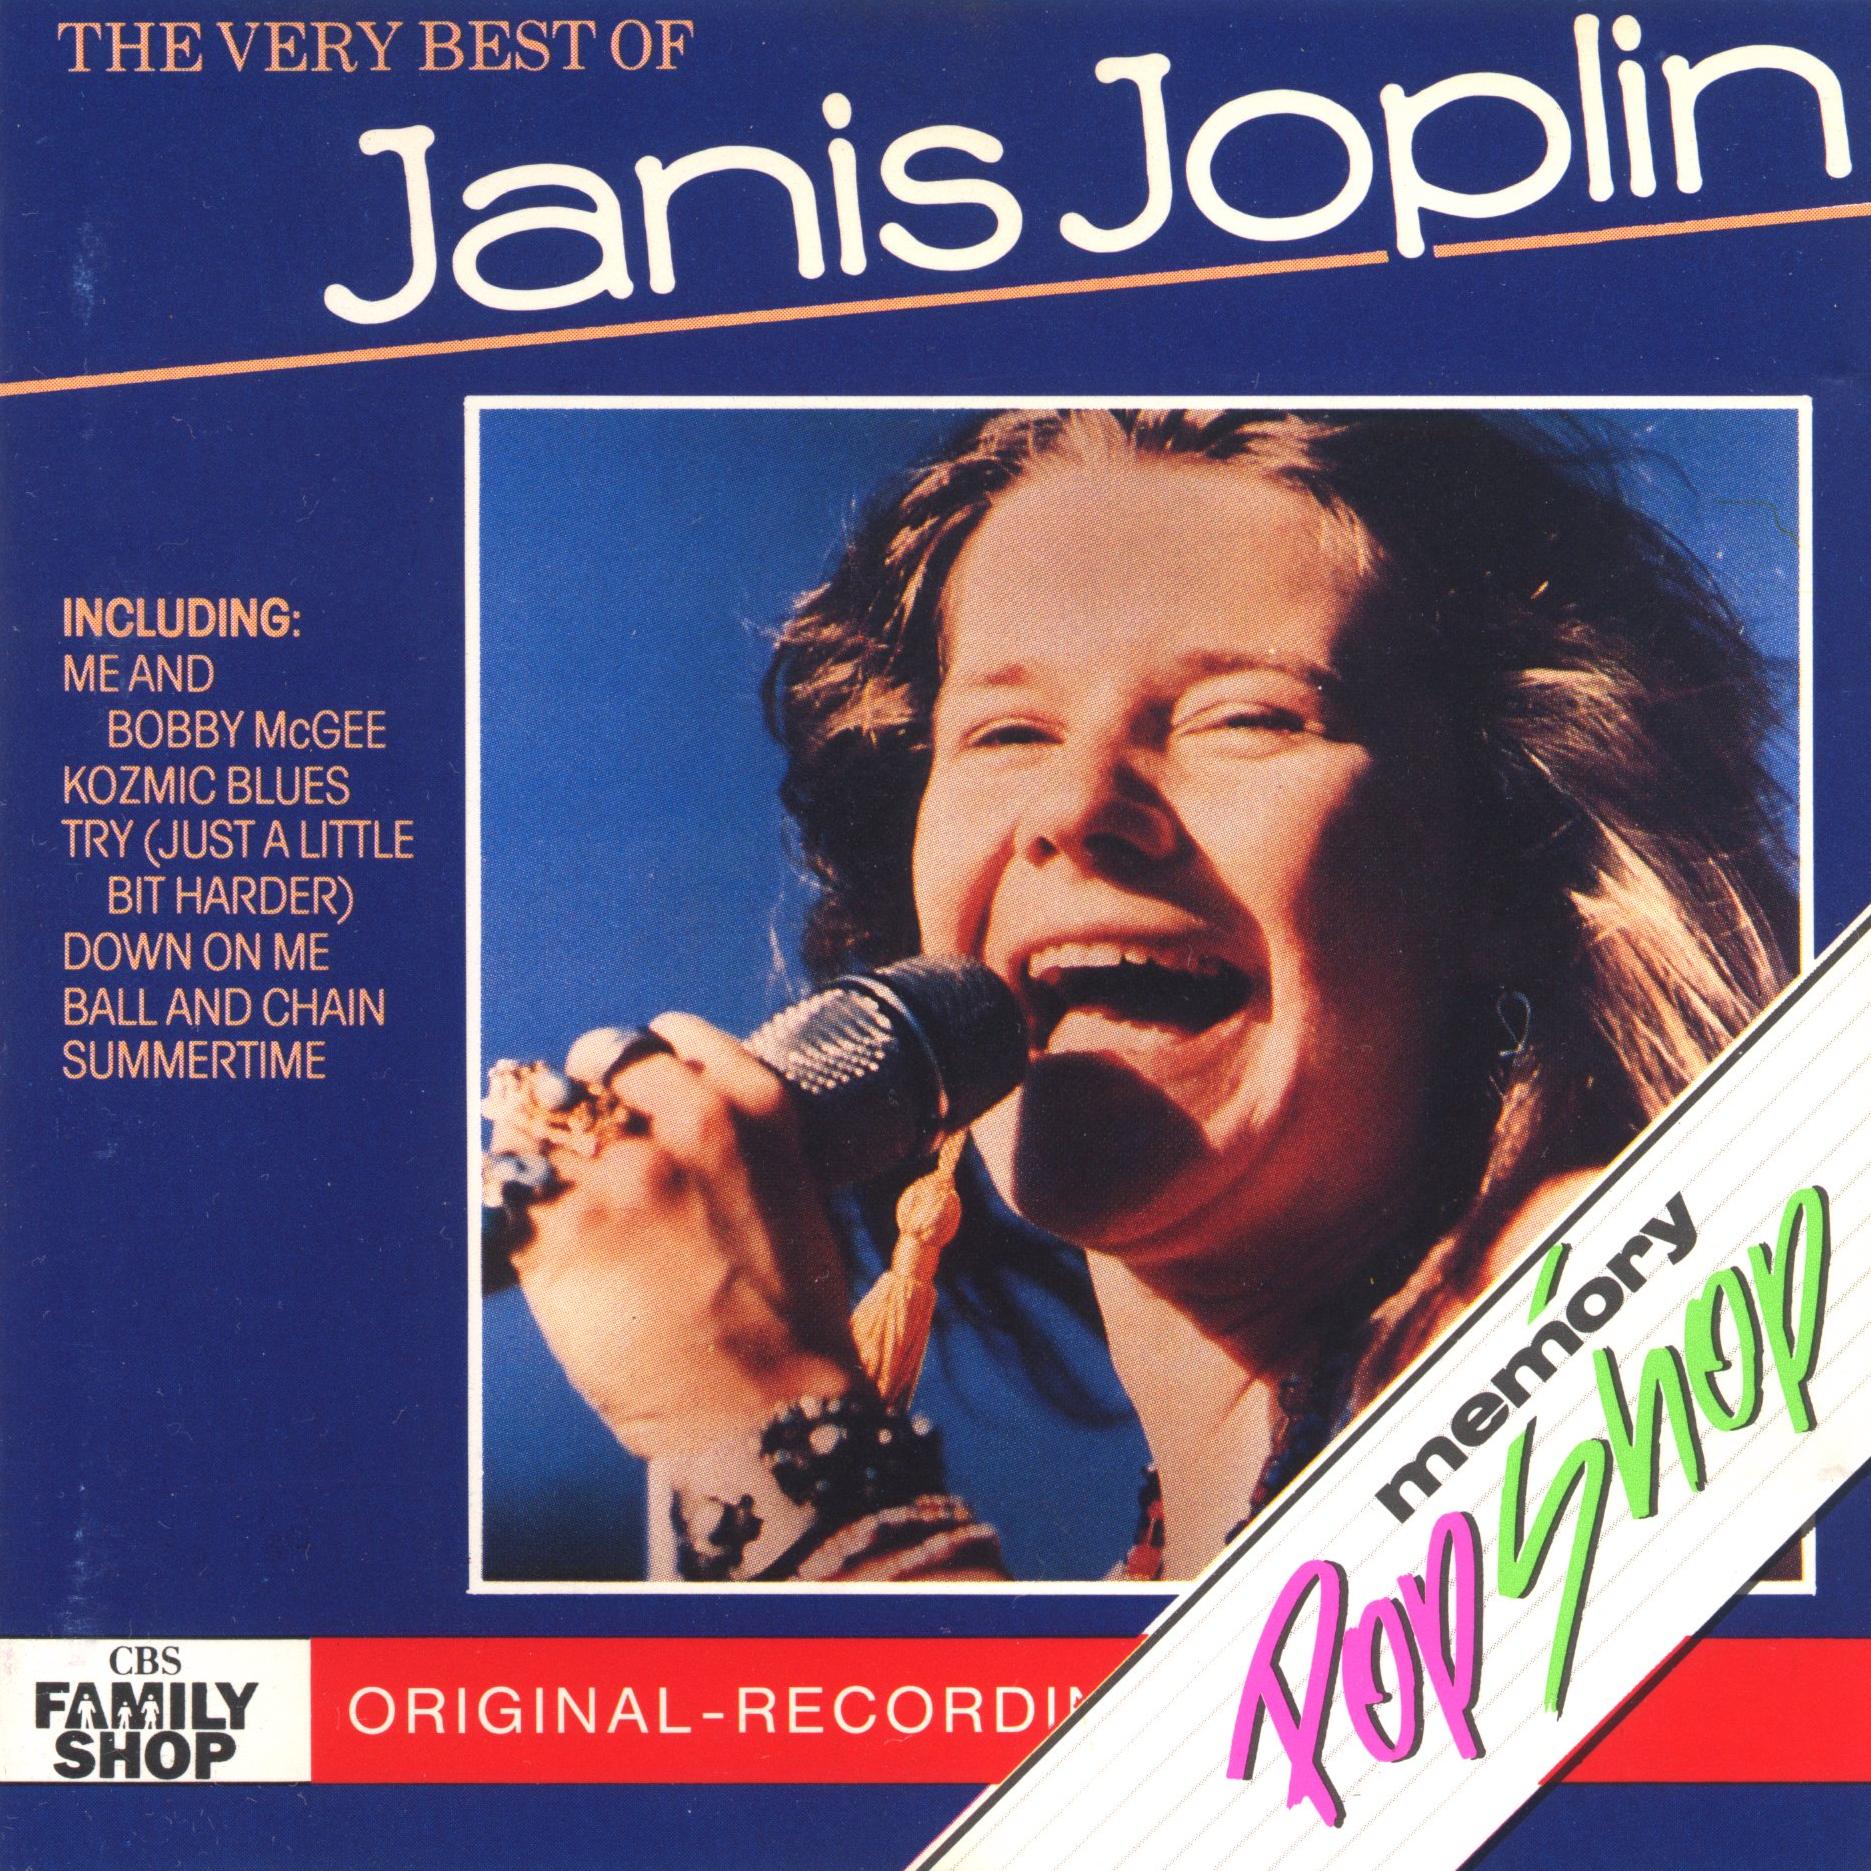 Release group “The Very Best of Janis Joplin” by Janis Joplin - MusicBrainz